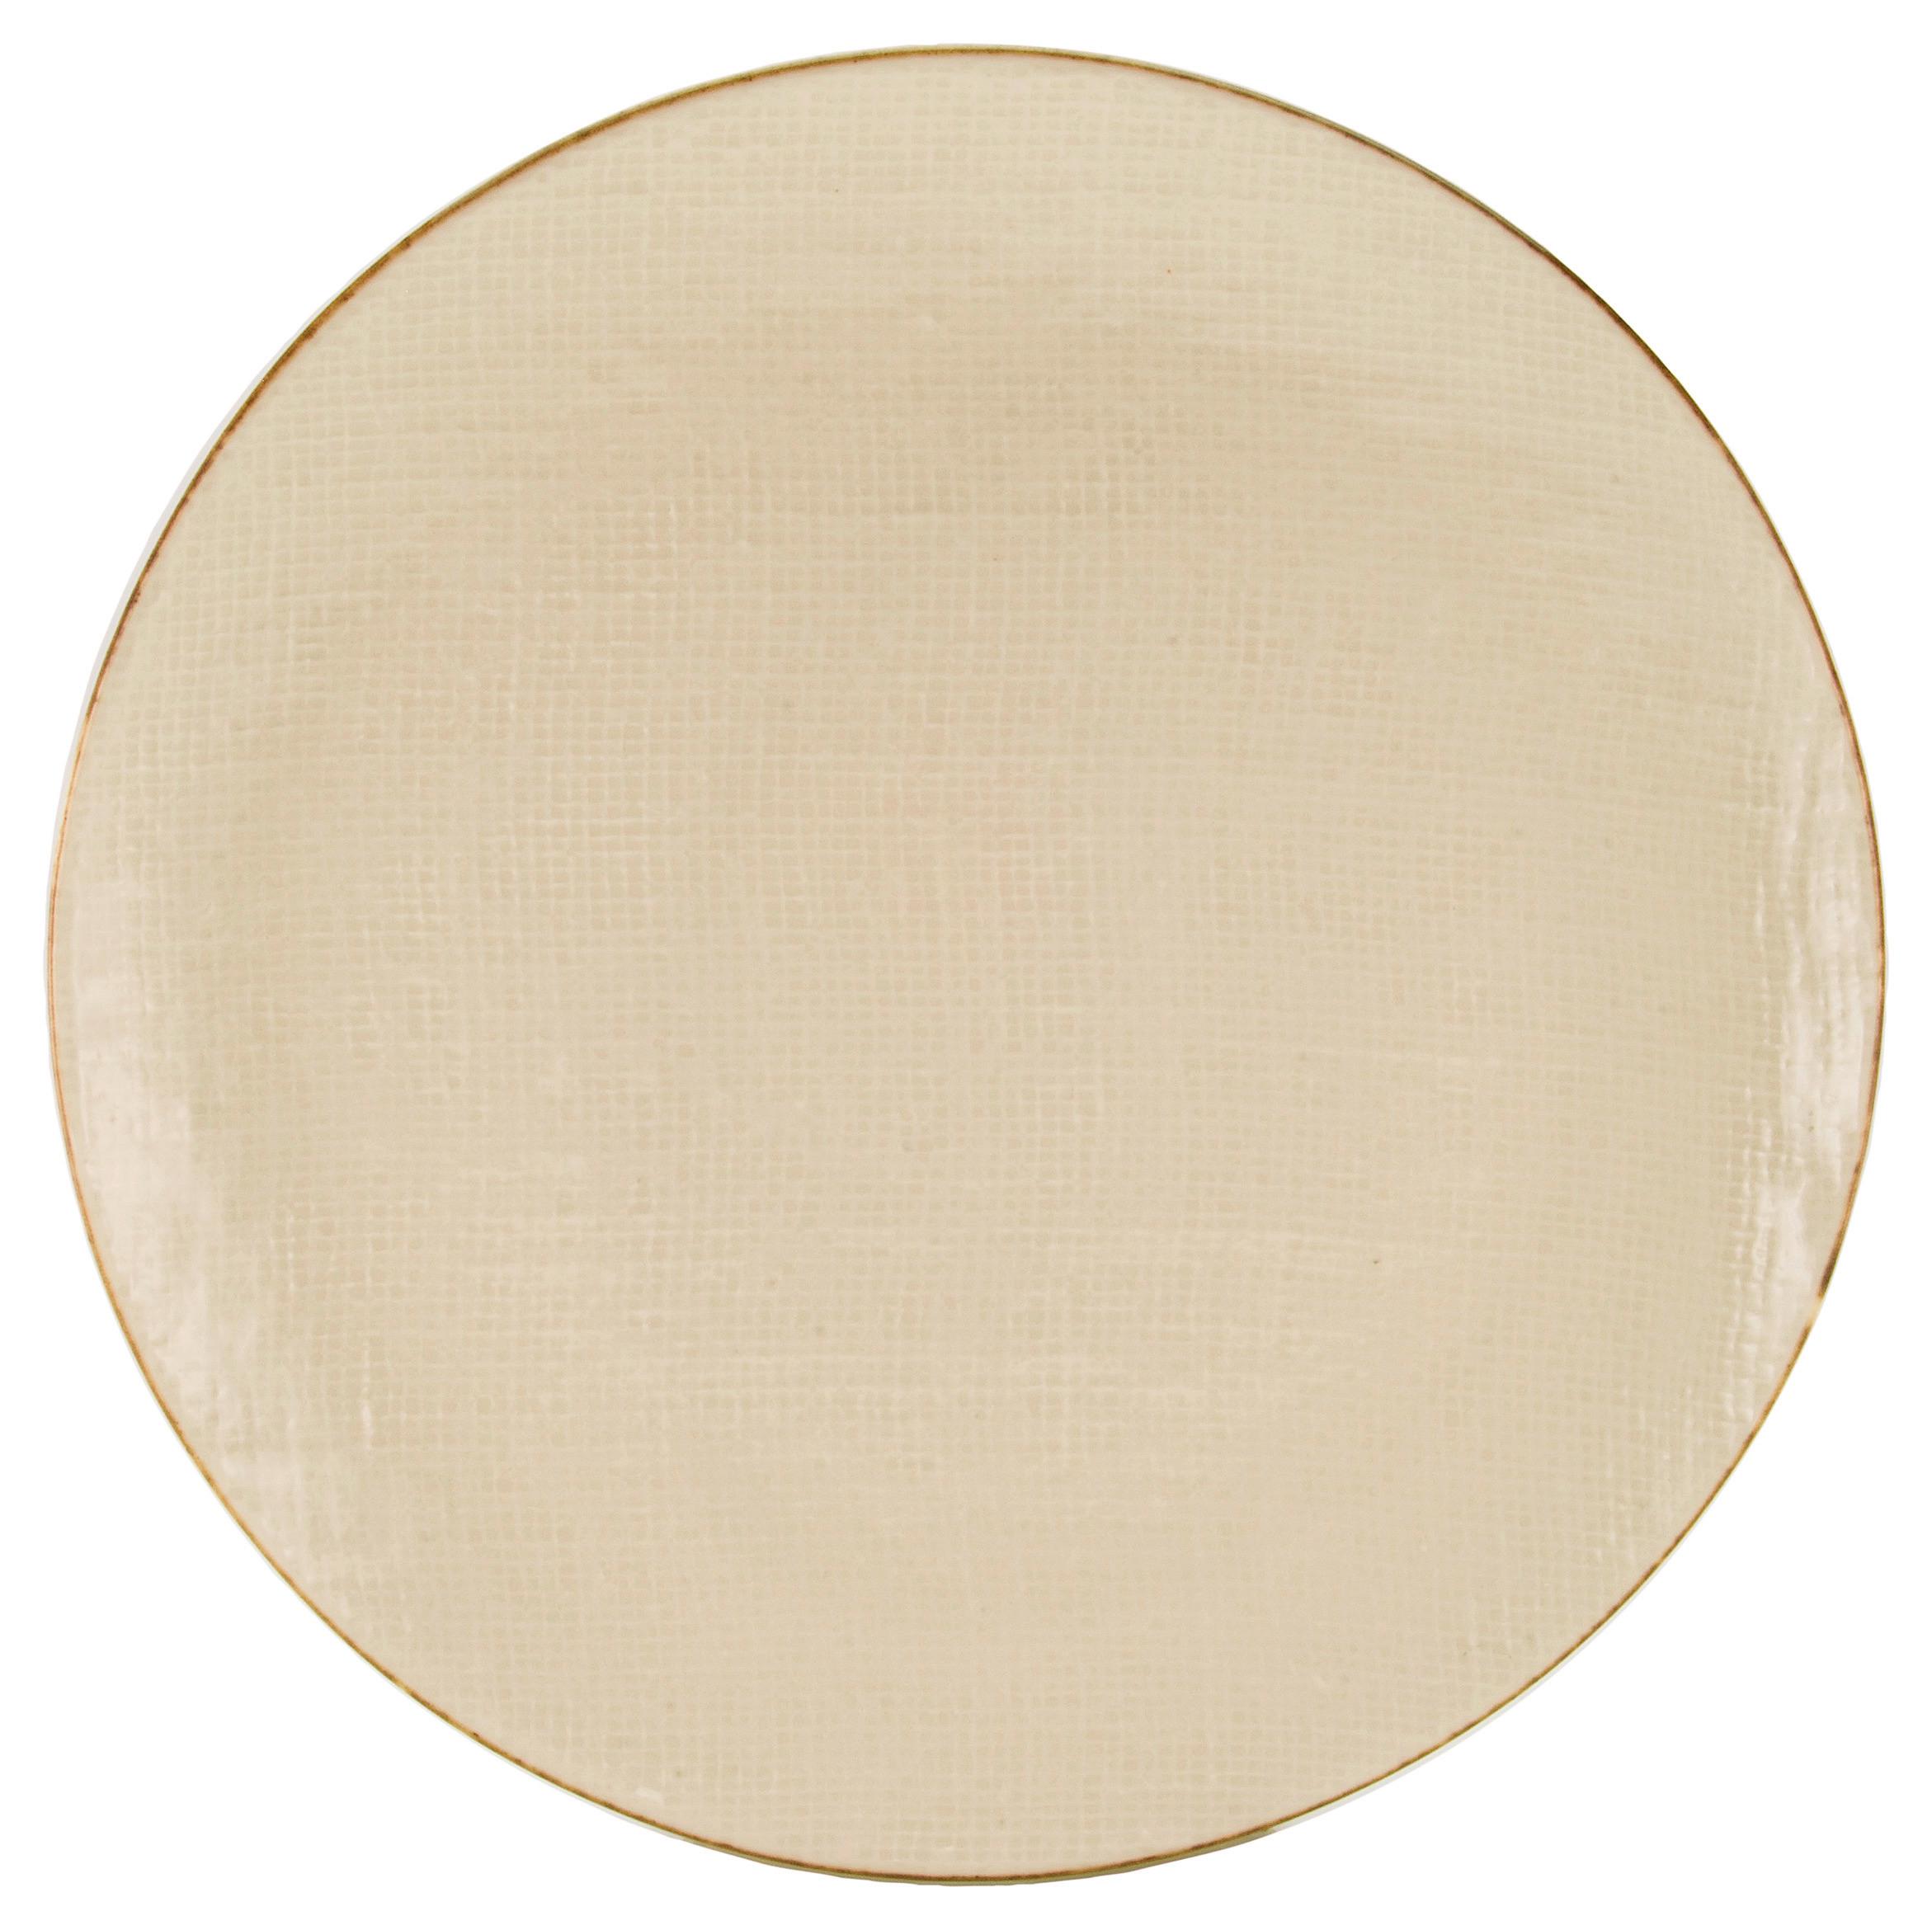 Speiseteller Canvas aus Steingut Ø ca. 28cm - Creme/Weiß, Keramik (28/28/3cm) - Premium Living